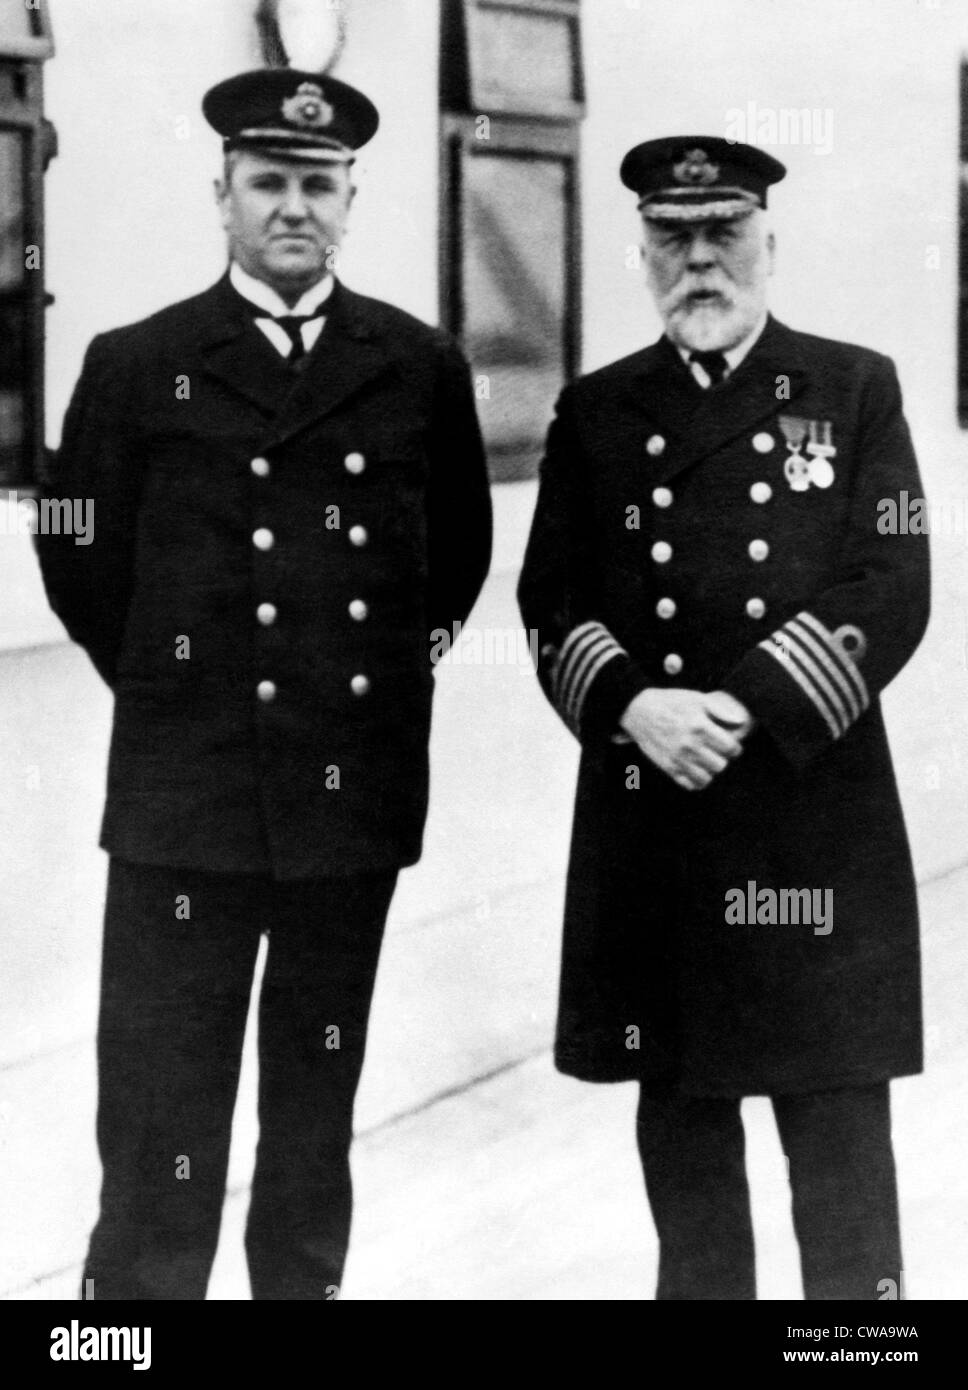 Le capitaine Edward Smith (à droite), du RMS Titanic, qui a coulé après avoir heurté un iceberg, 1912.. Avec la permission de la CSU : Archives / Everett Banque D'Images